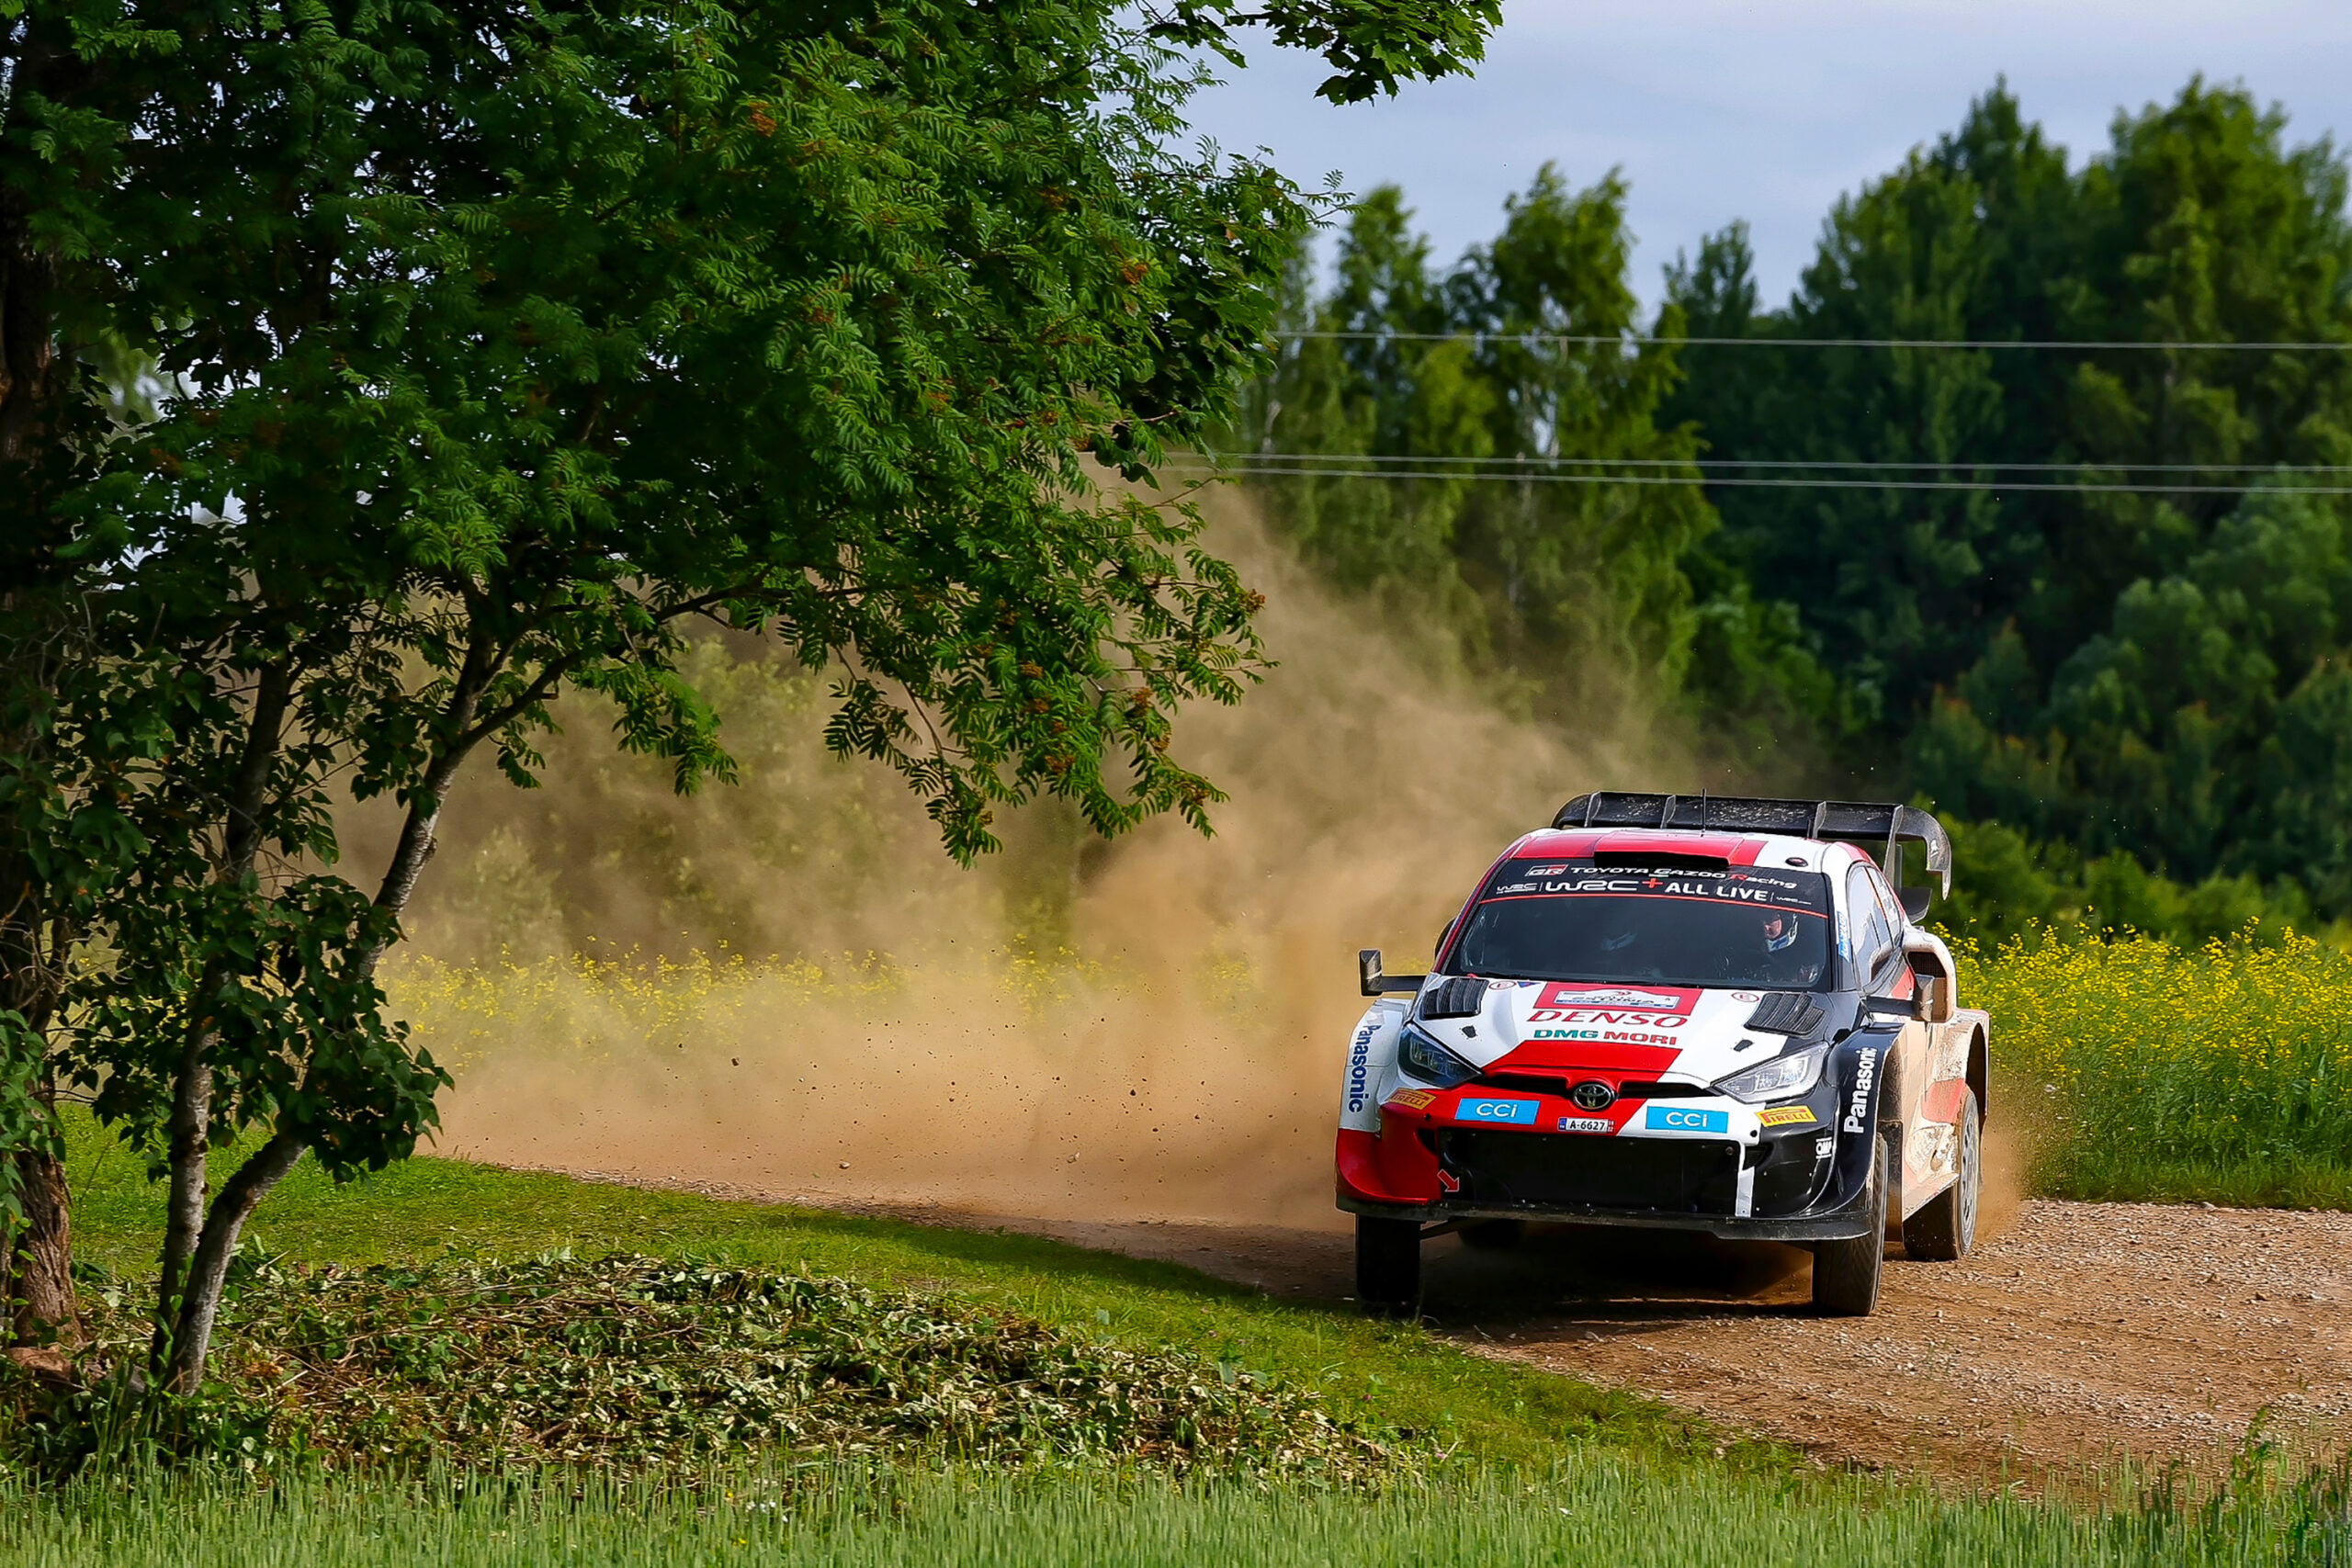 Rovanperä lo volvió a hacer, y… ¡Toyota hace el 1-2 en el Rally de Estonia!